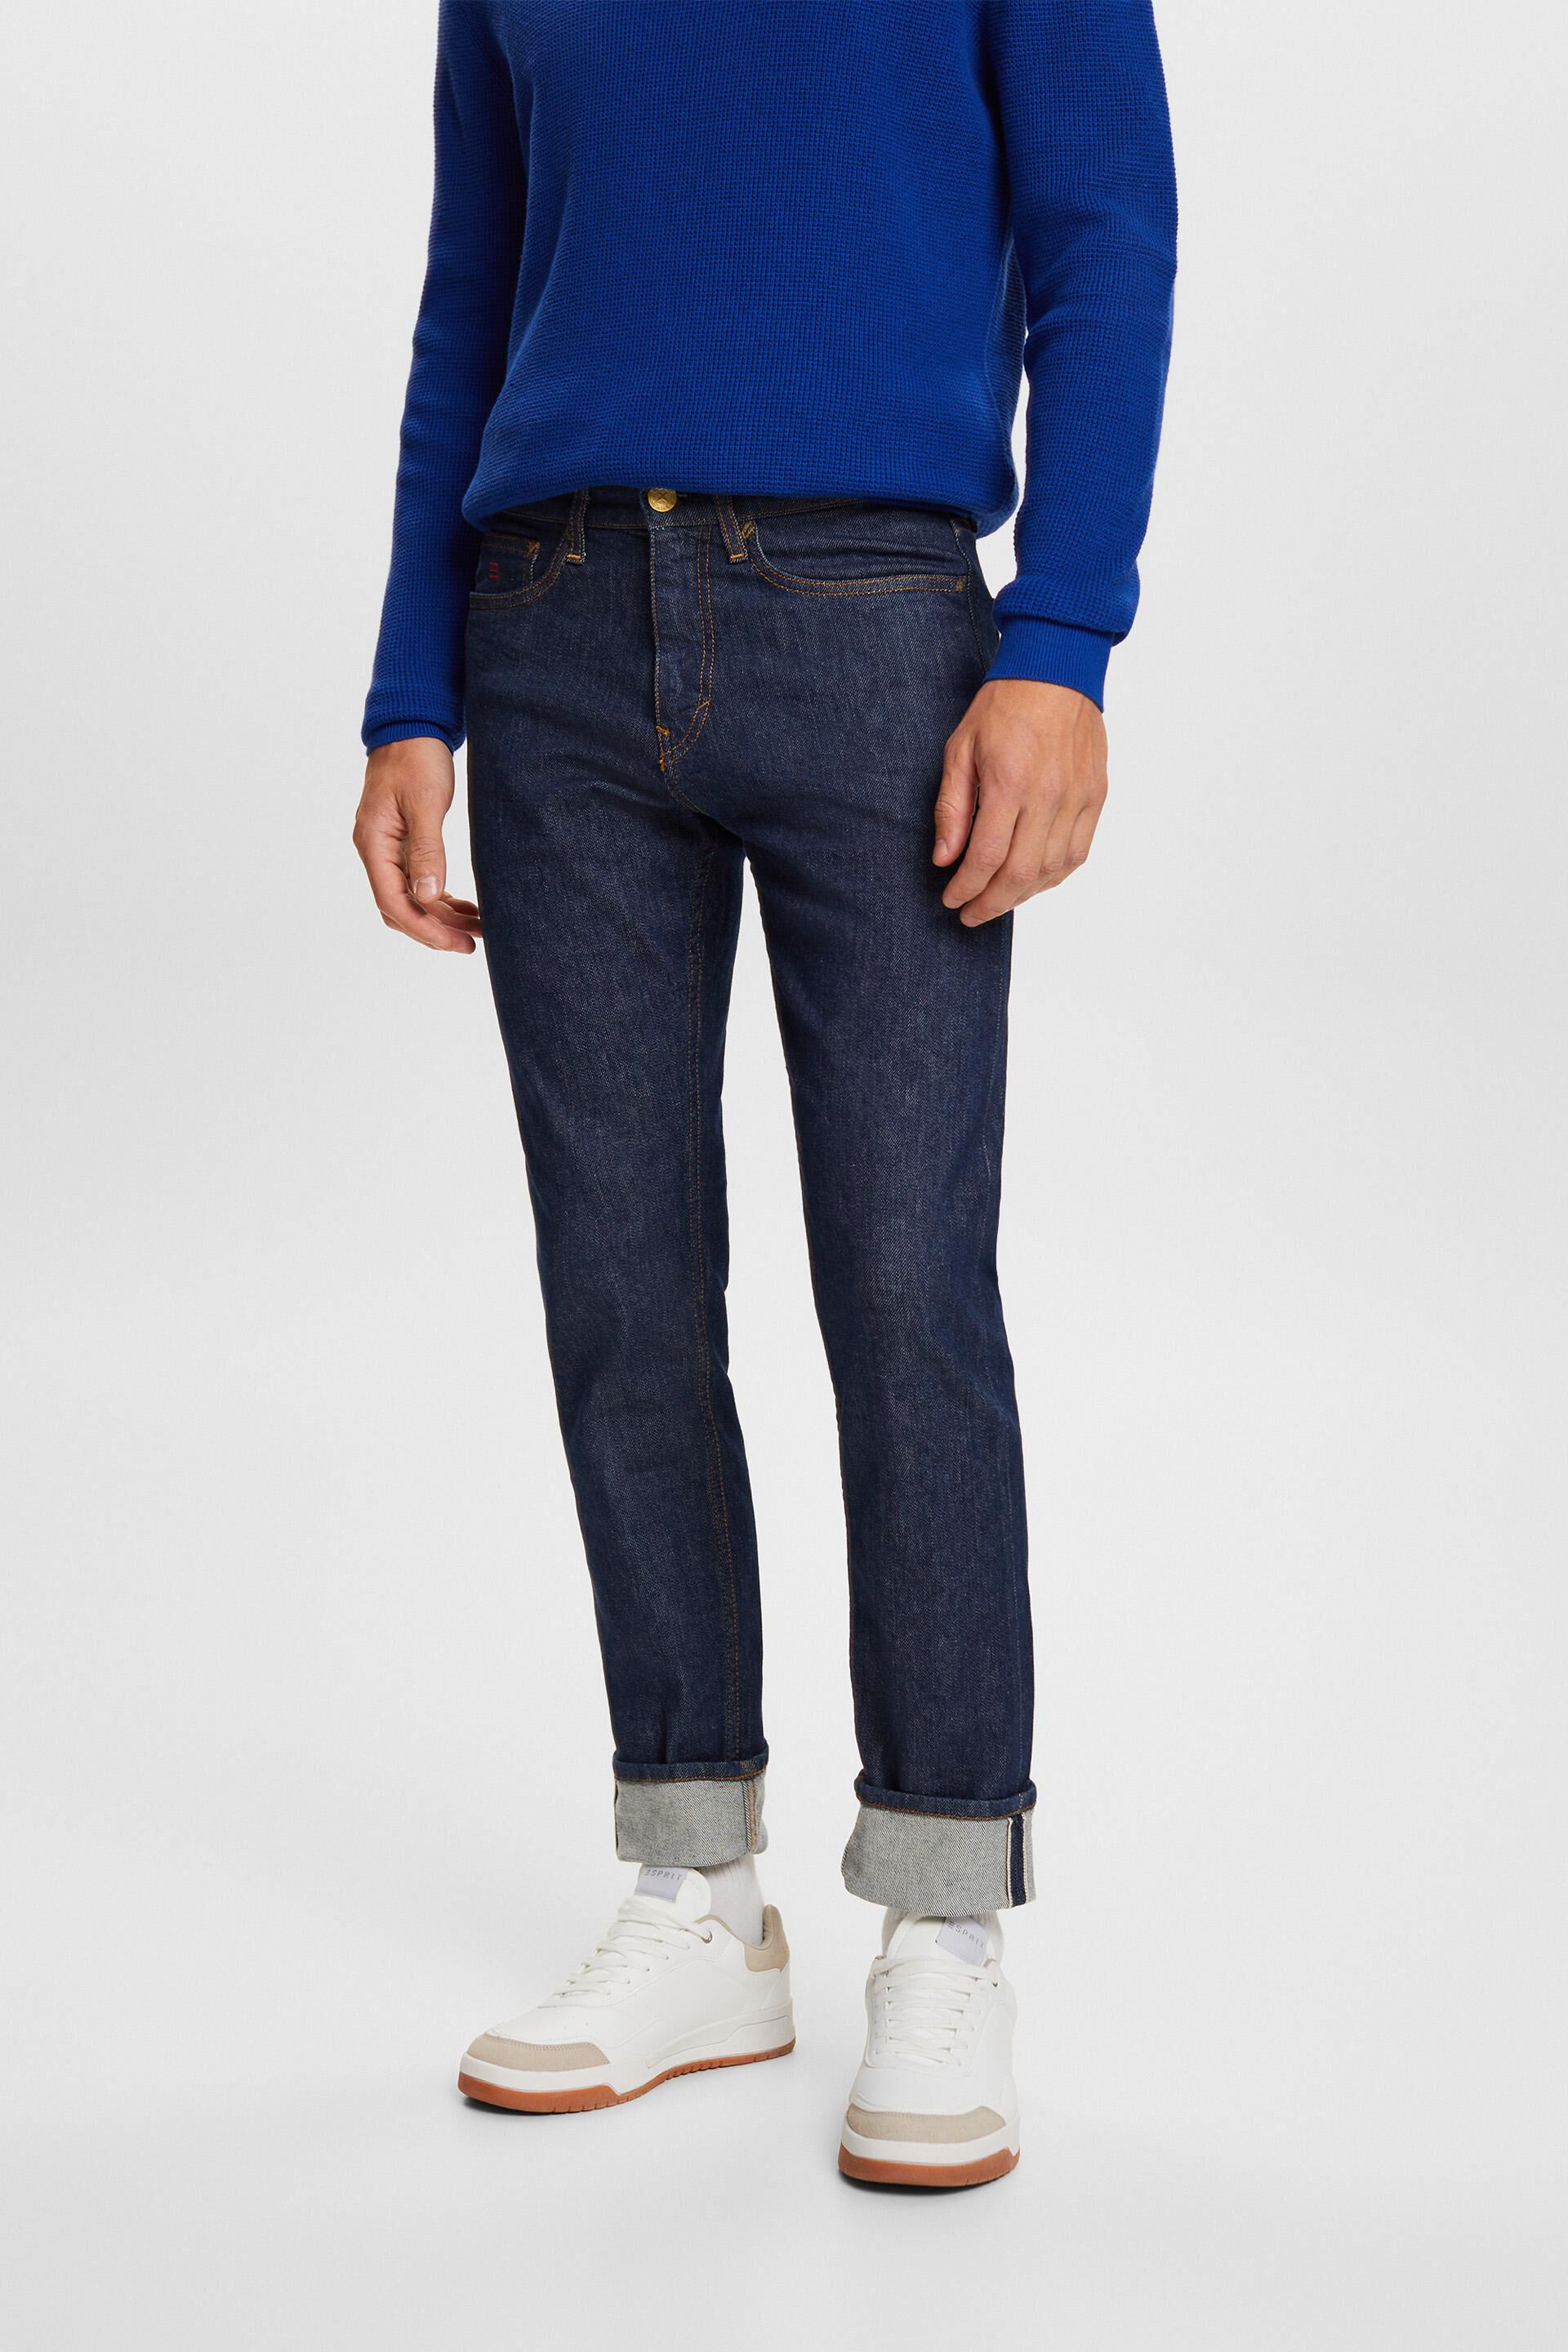 Esprit Premium jeans with selvedge slim fit